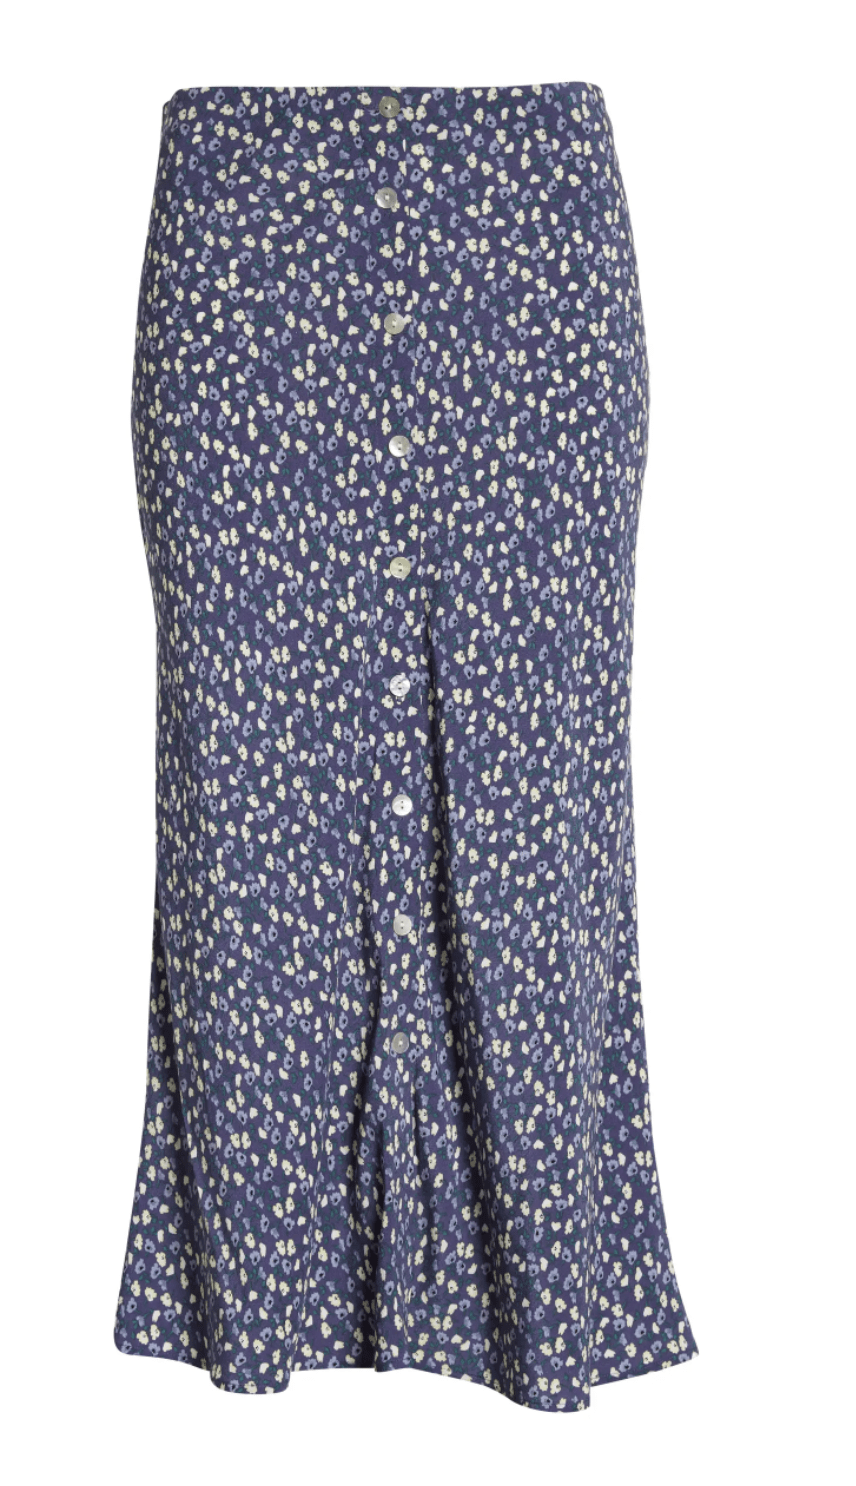 long blue floral patterned skirt